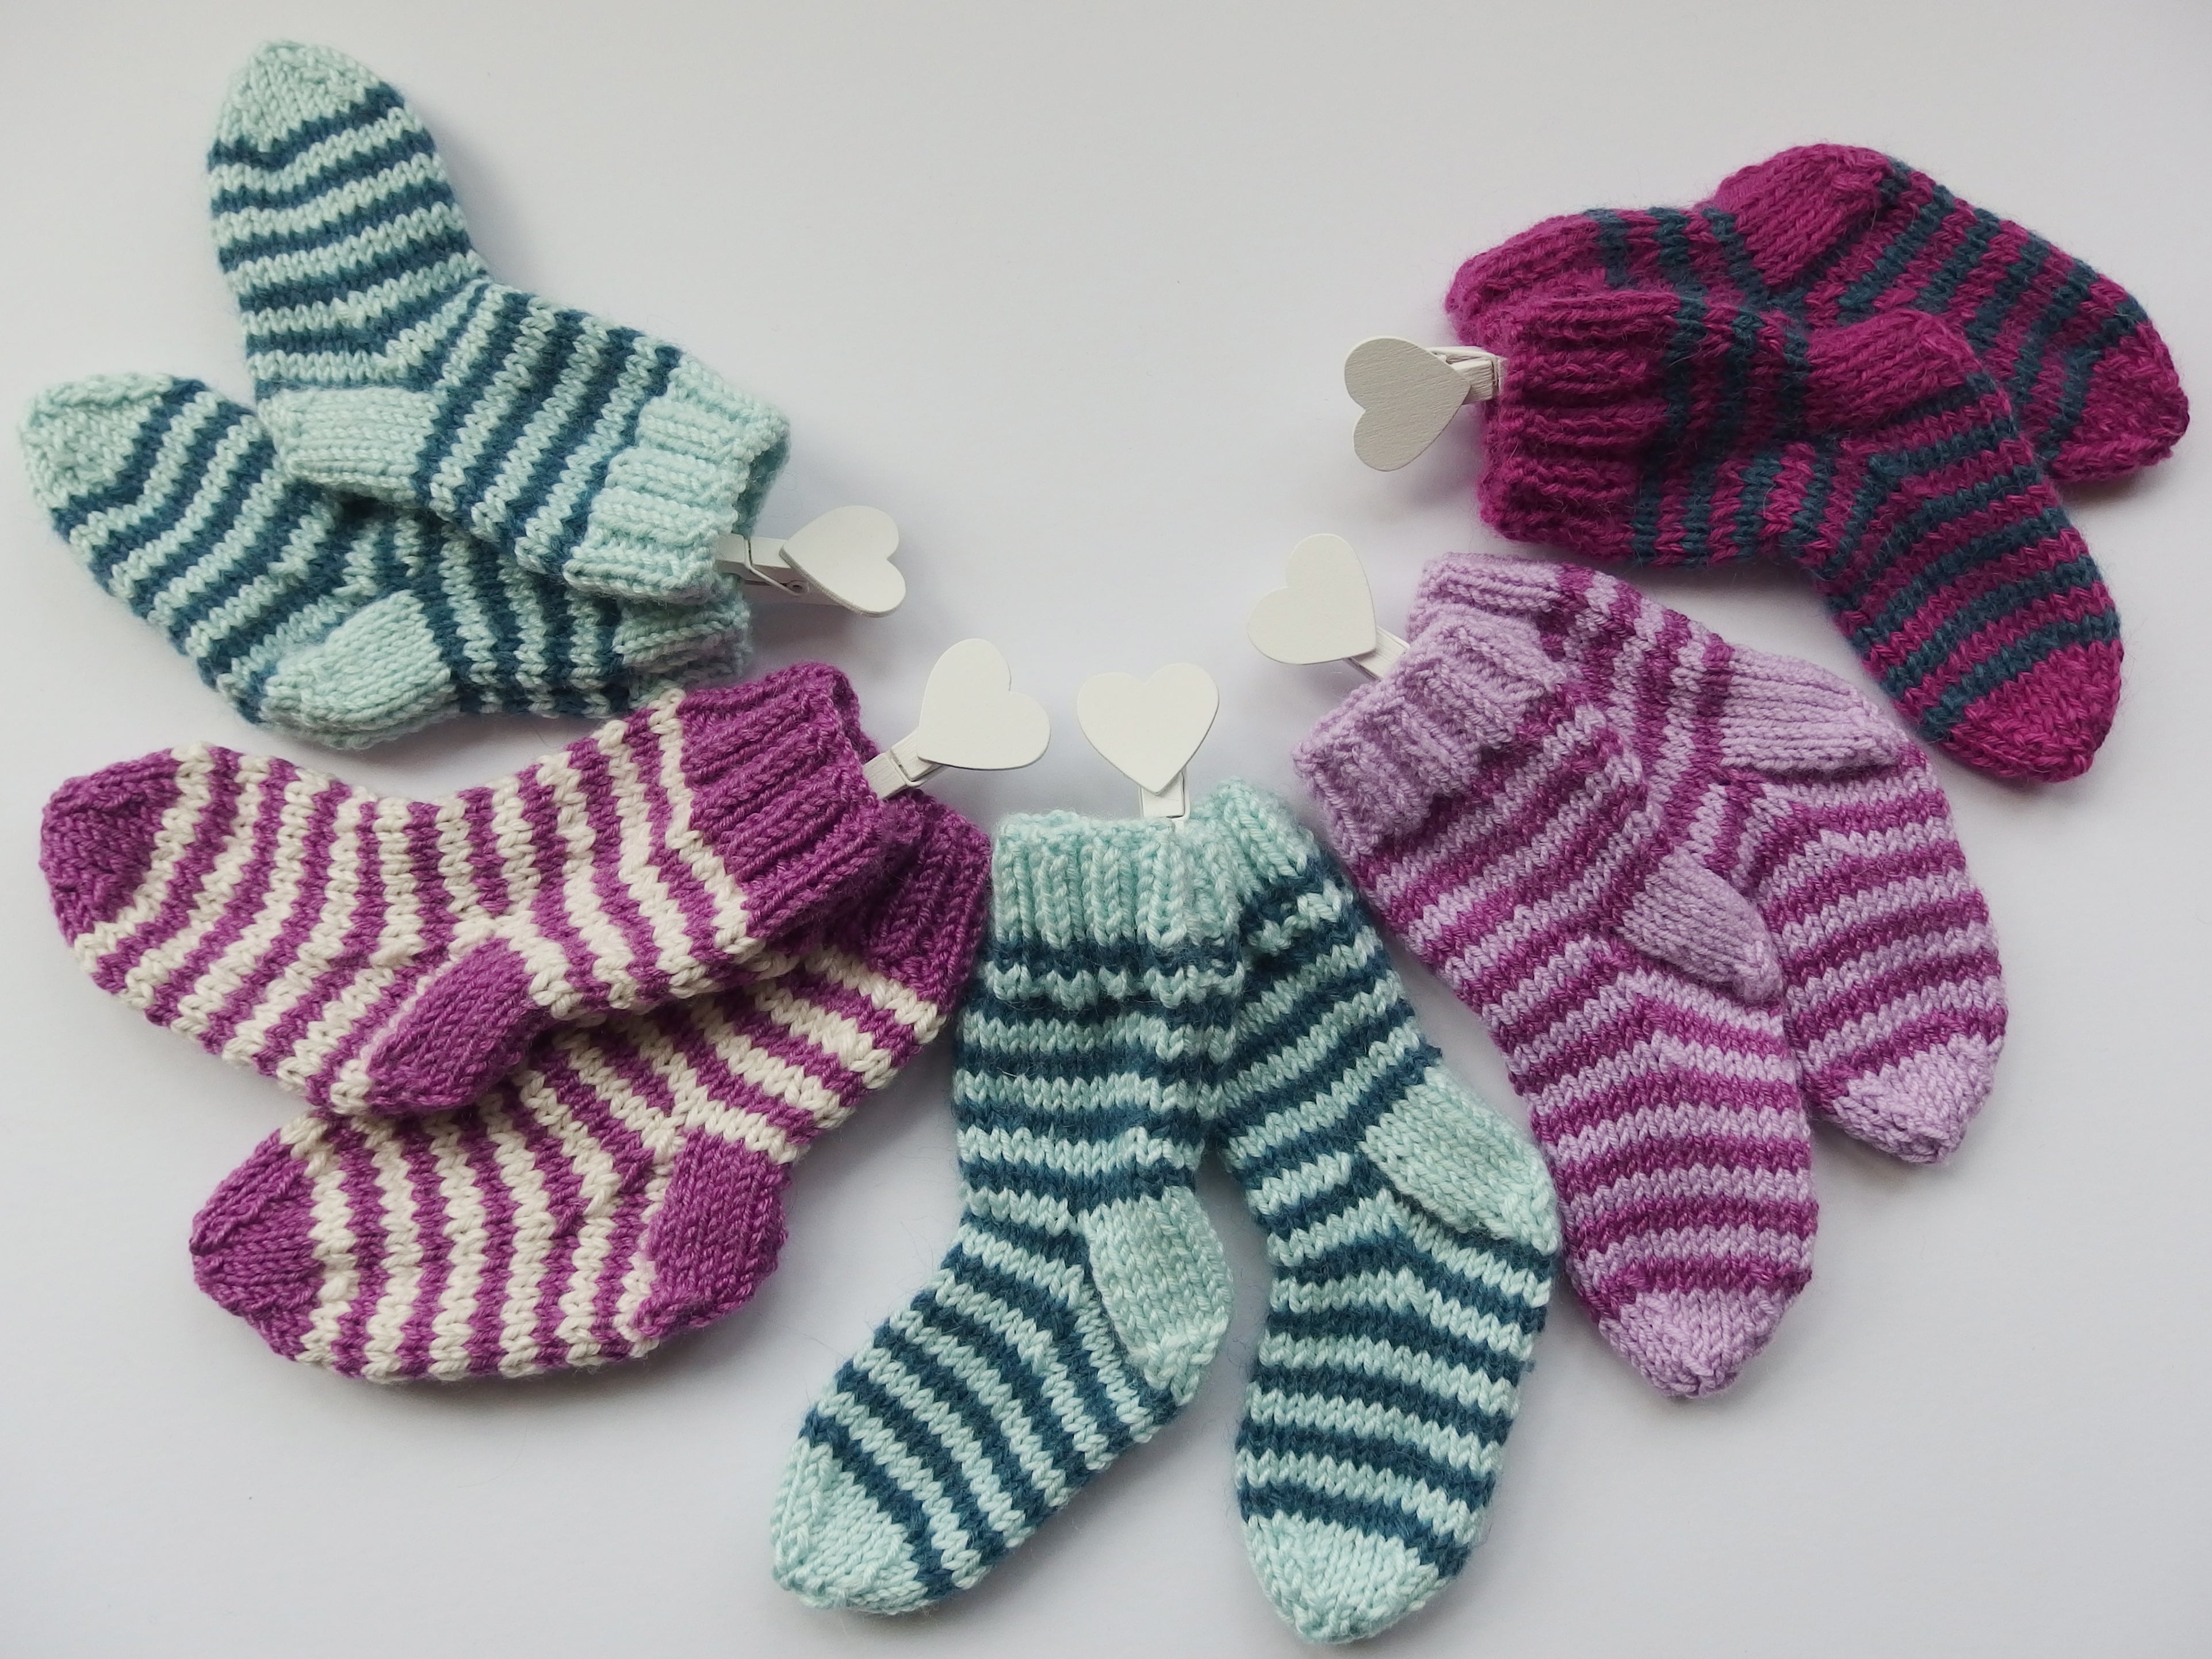 Baby Socks - hand made using 100% baby merino wool